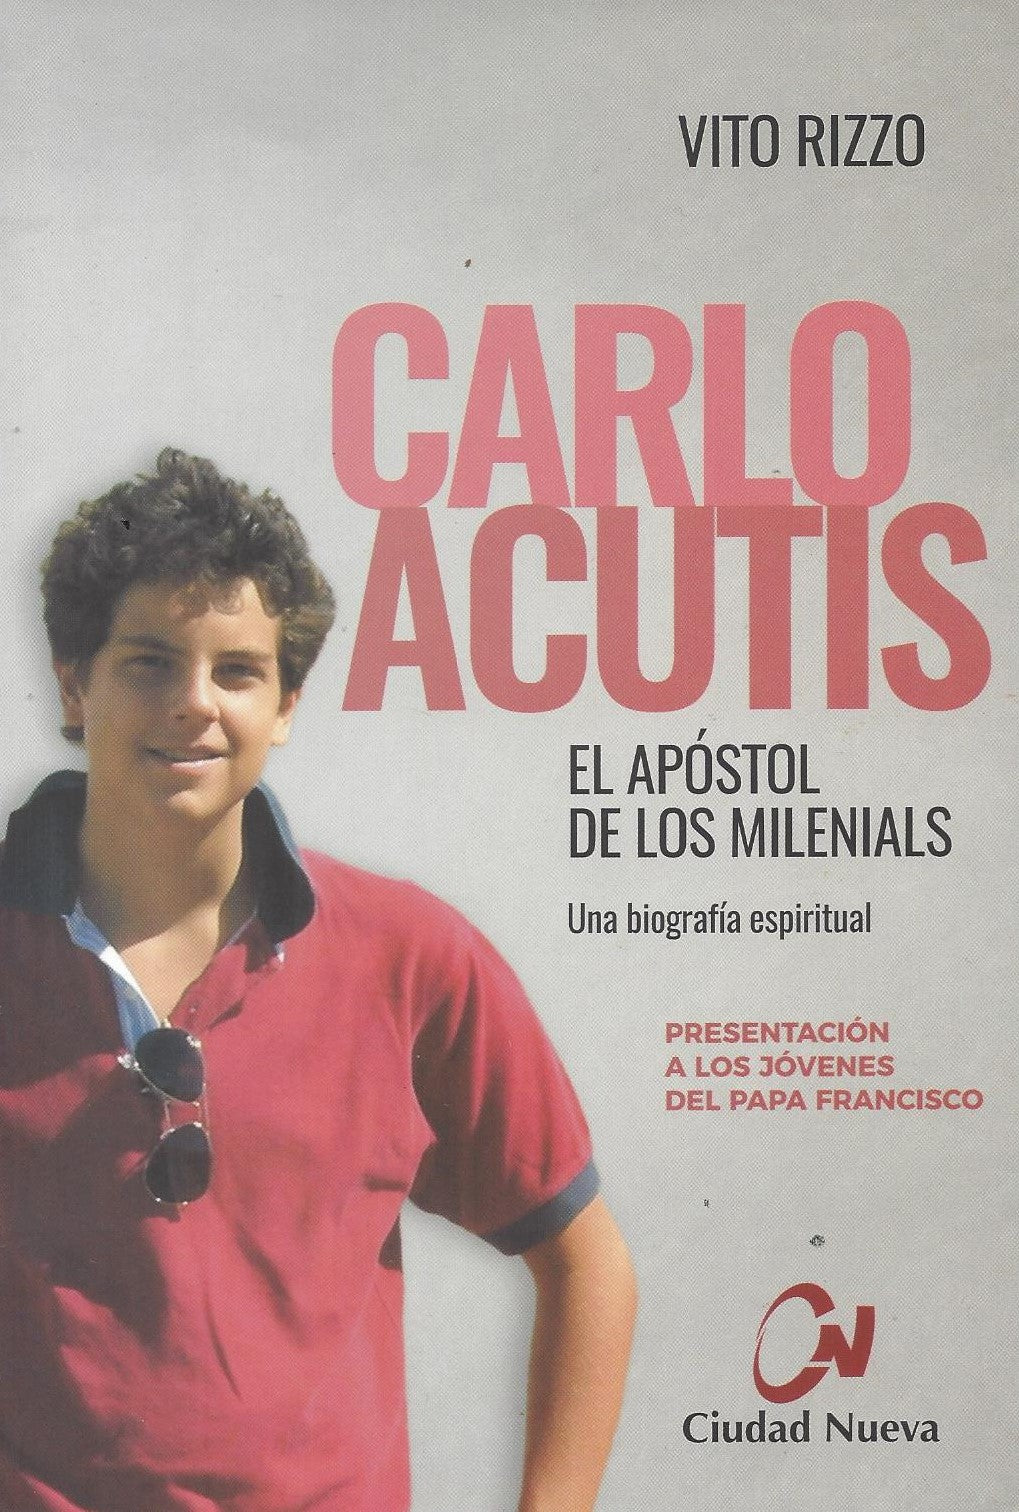 Carlo Acutis – El Apóstol de los Milenials, Una biografía espiritual